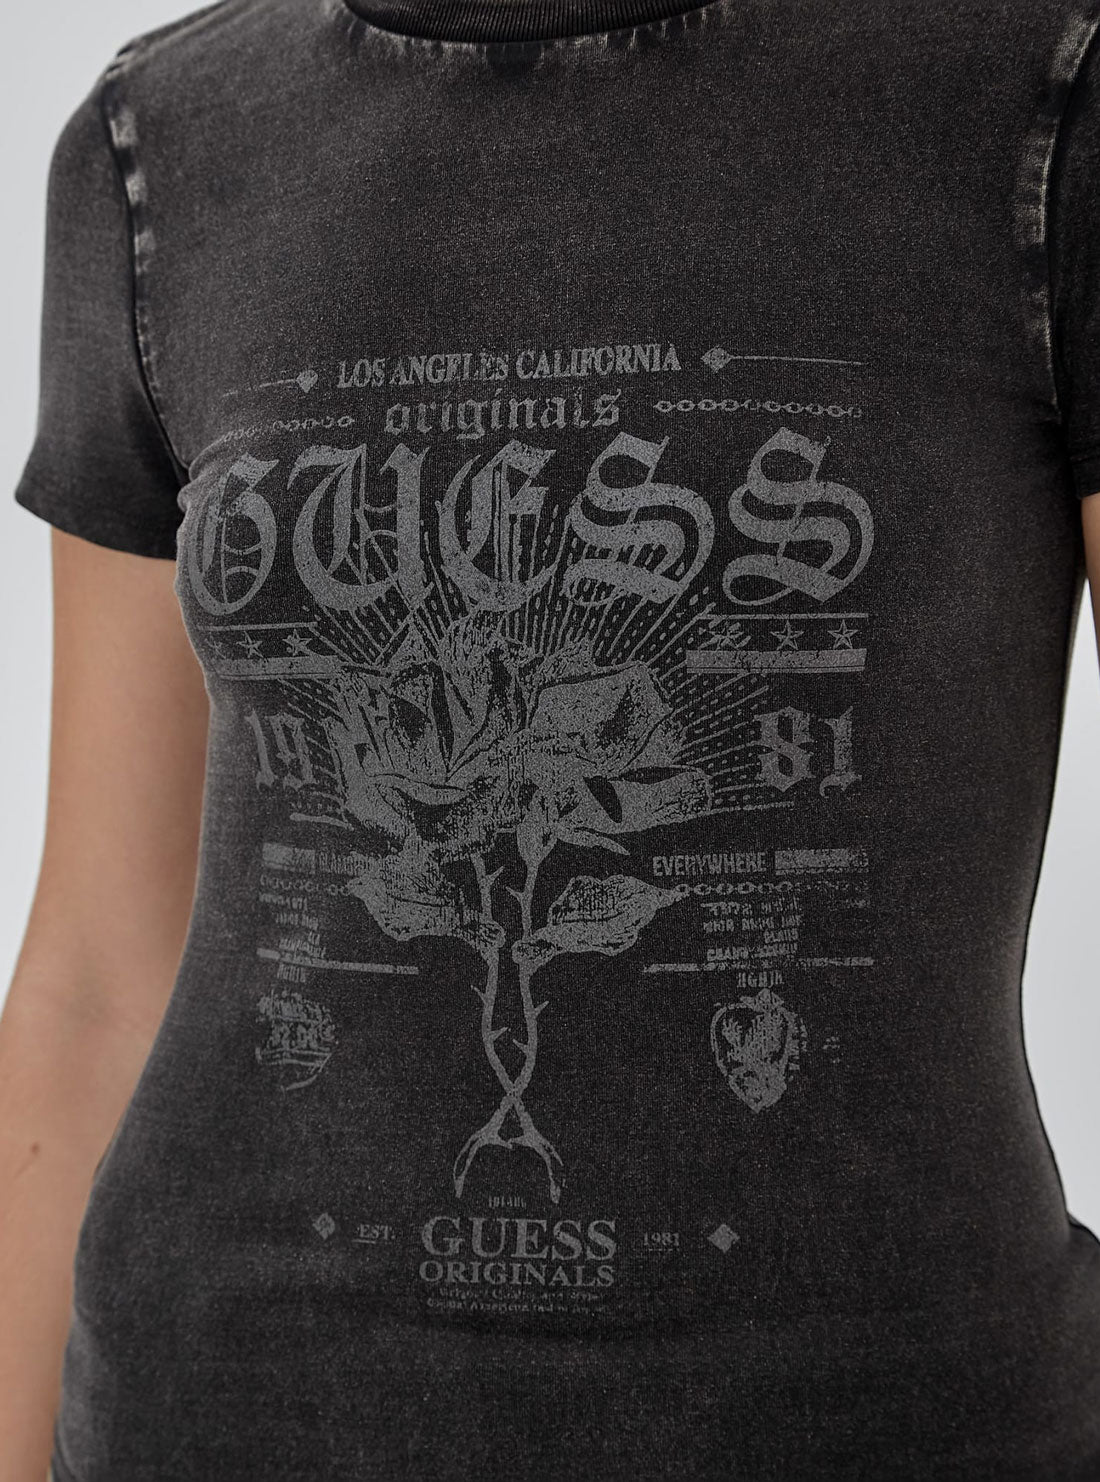 GUESS Guess Originals Black T-Shirt detail view